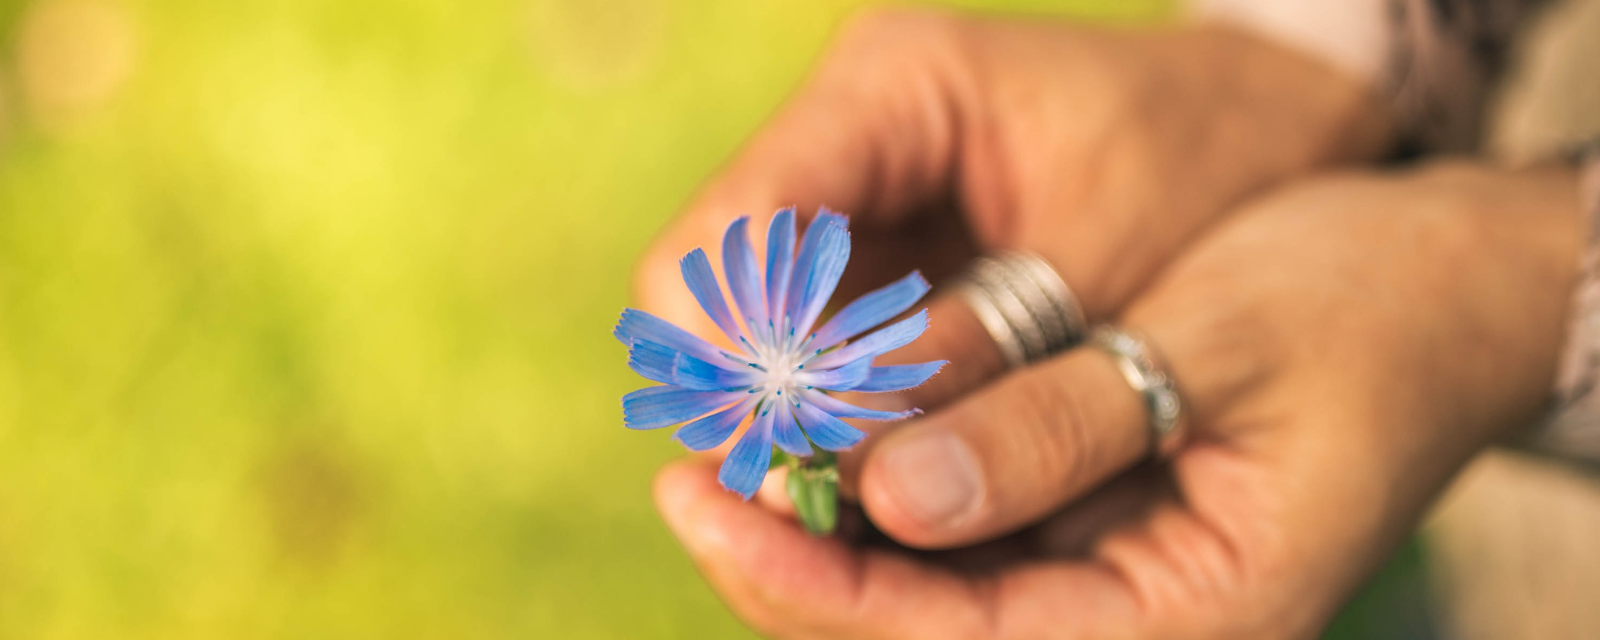 Mão segurando uma flor azul, que representa o valor do Carisma na Congregação Nossa Senhora das Dores